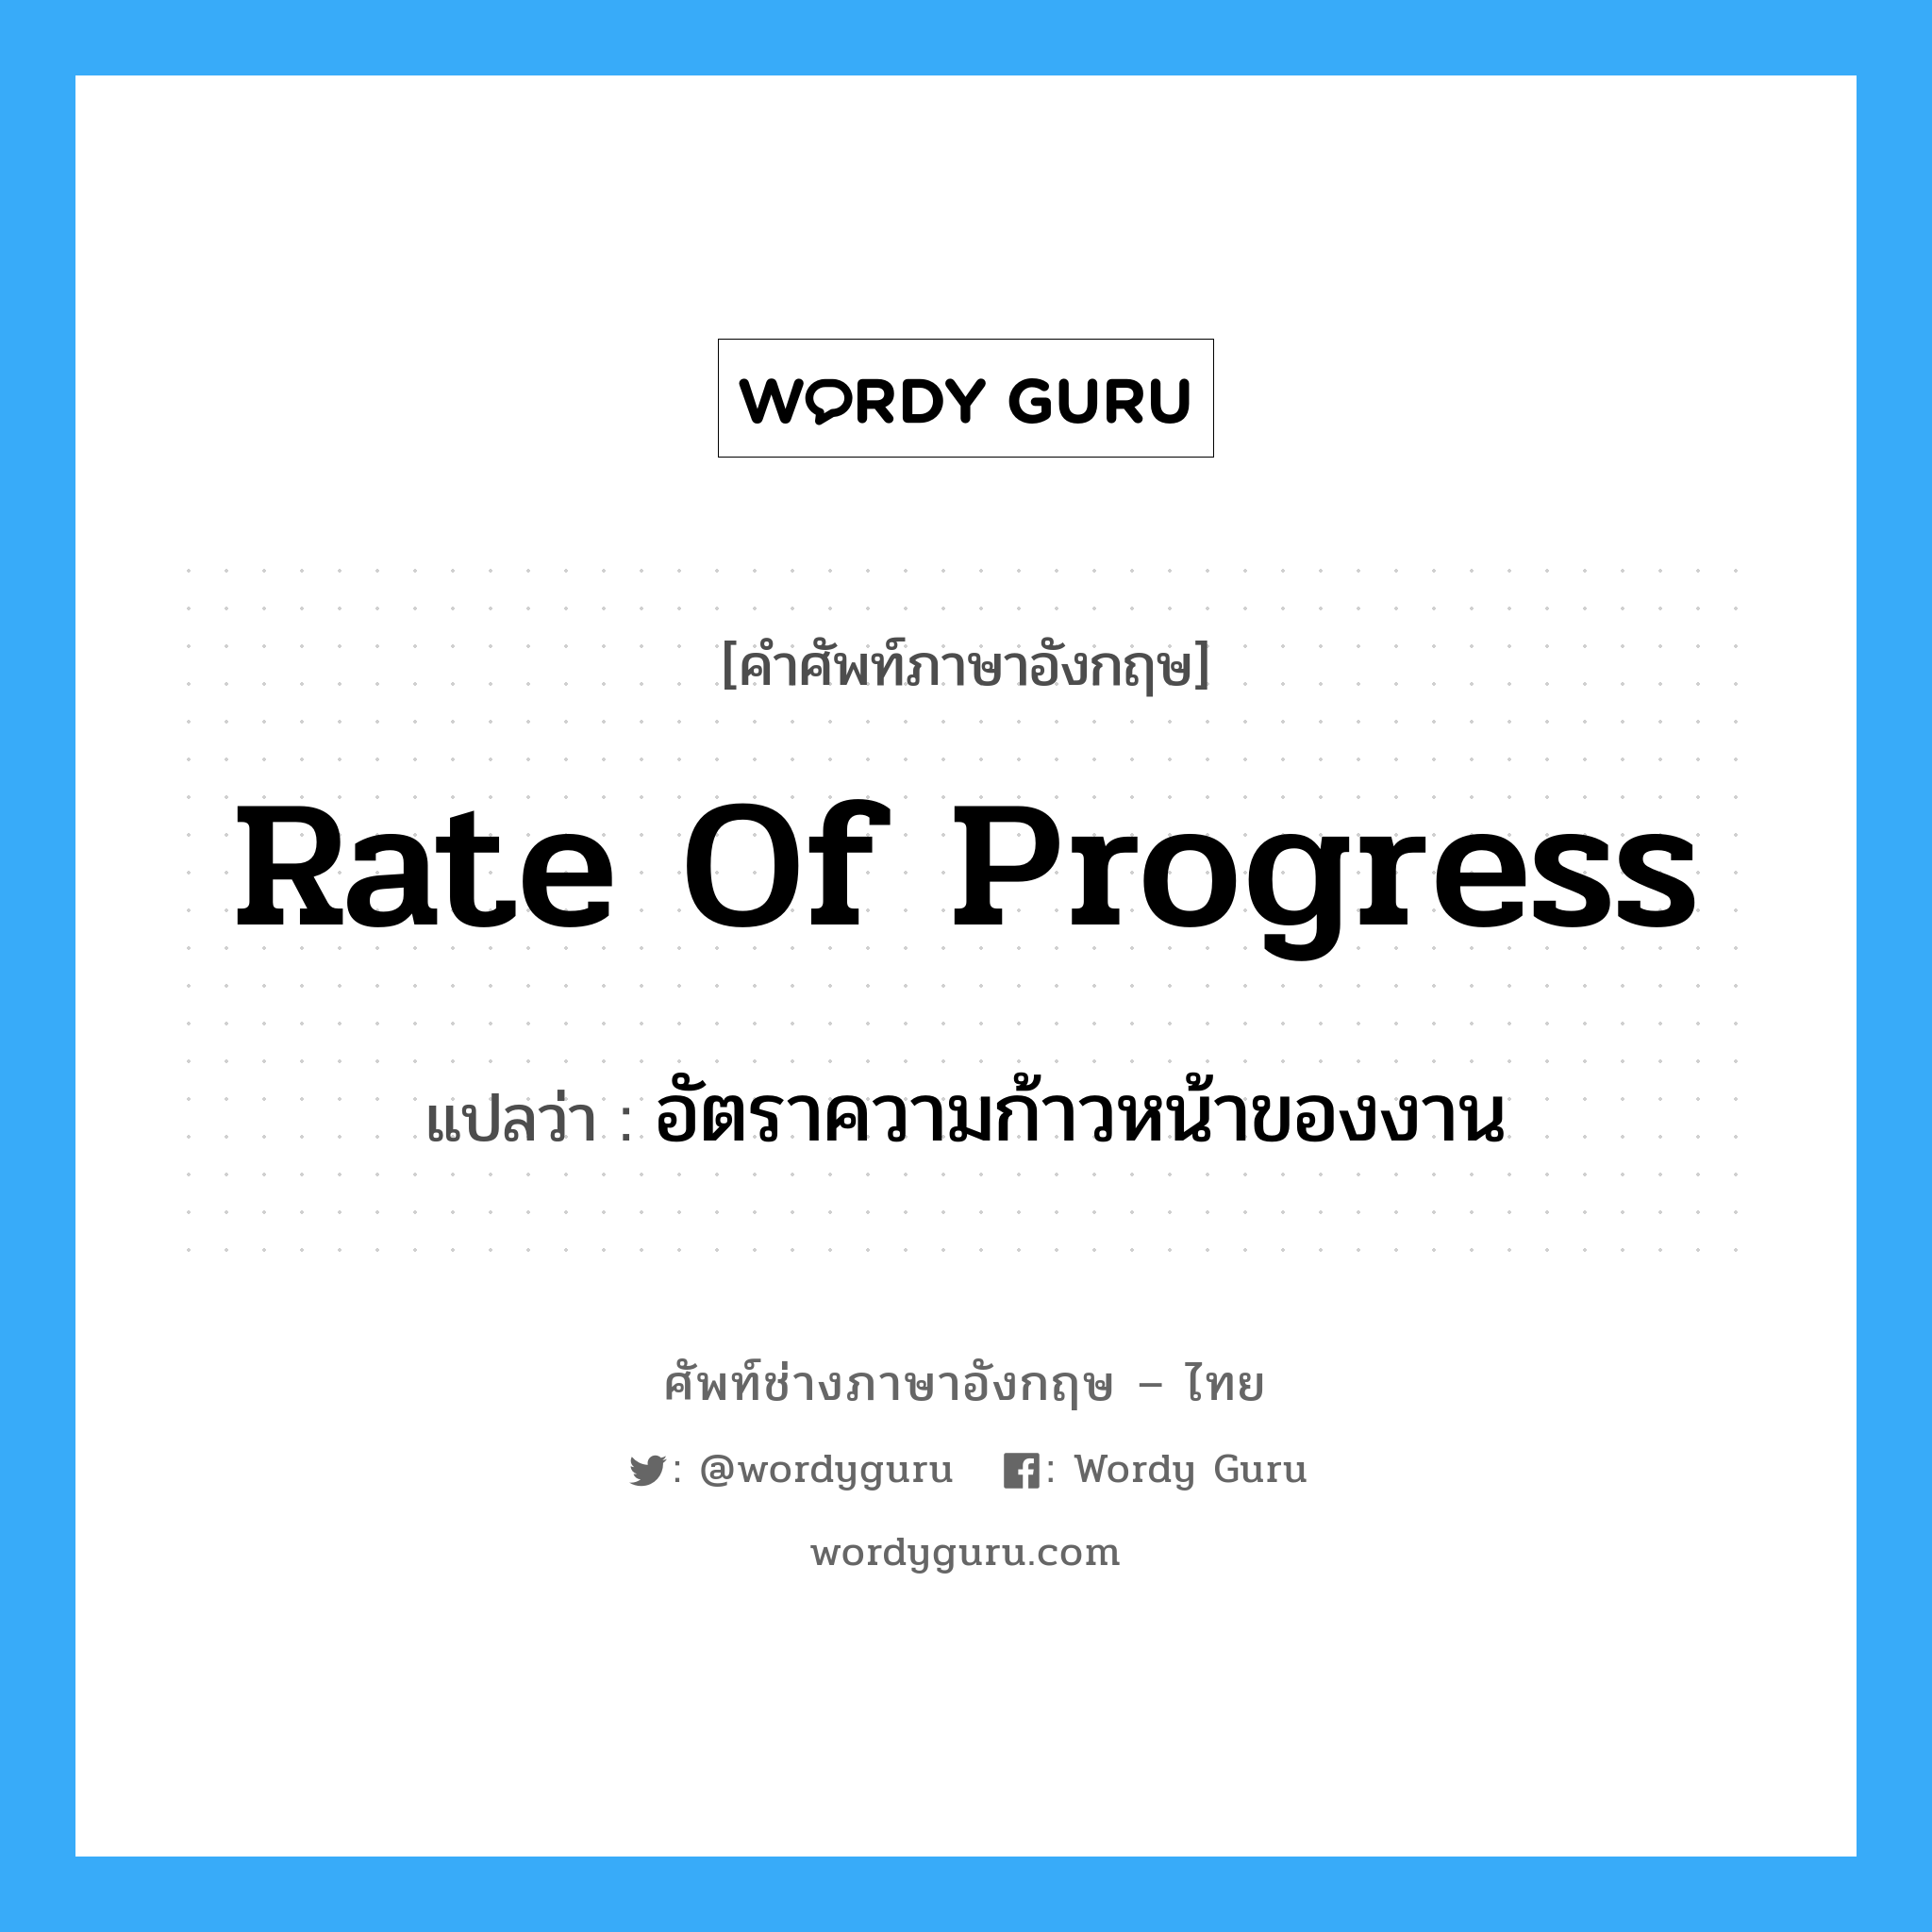 Rate of Progress แปลว่า?, คำศัพท์ช่างภาษาอังกฤษ - ไทย Rate of Progress คำศัพท์ภาษาอังกฤษ Rate of Progress แปลว่า อัตราความก้าวหน้าของงาน